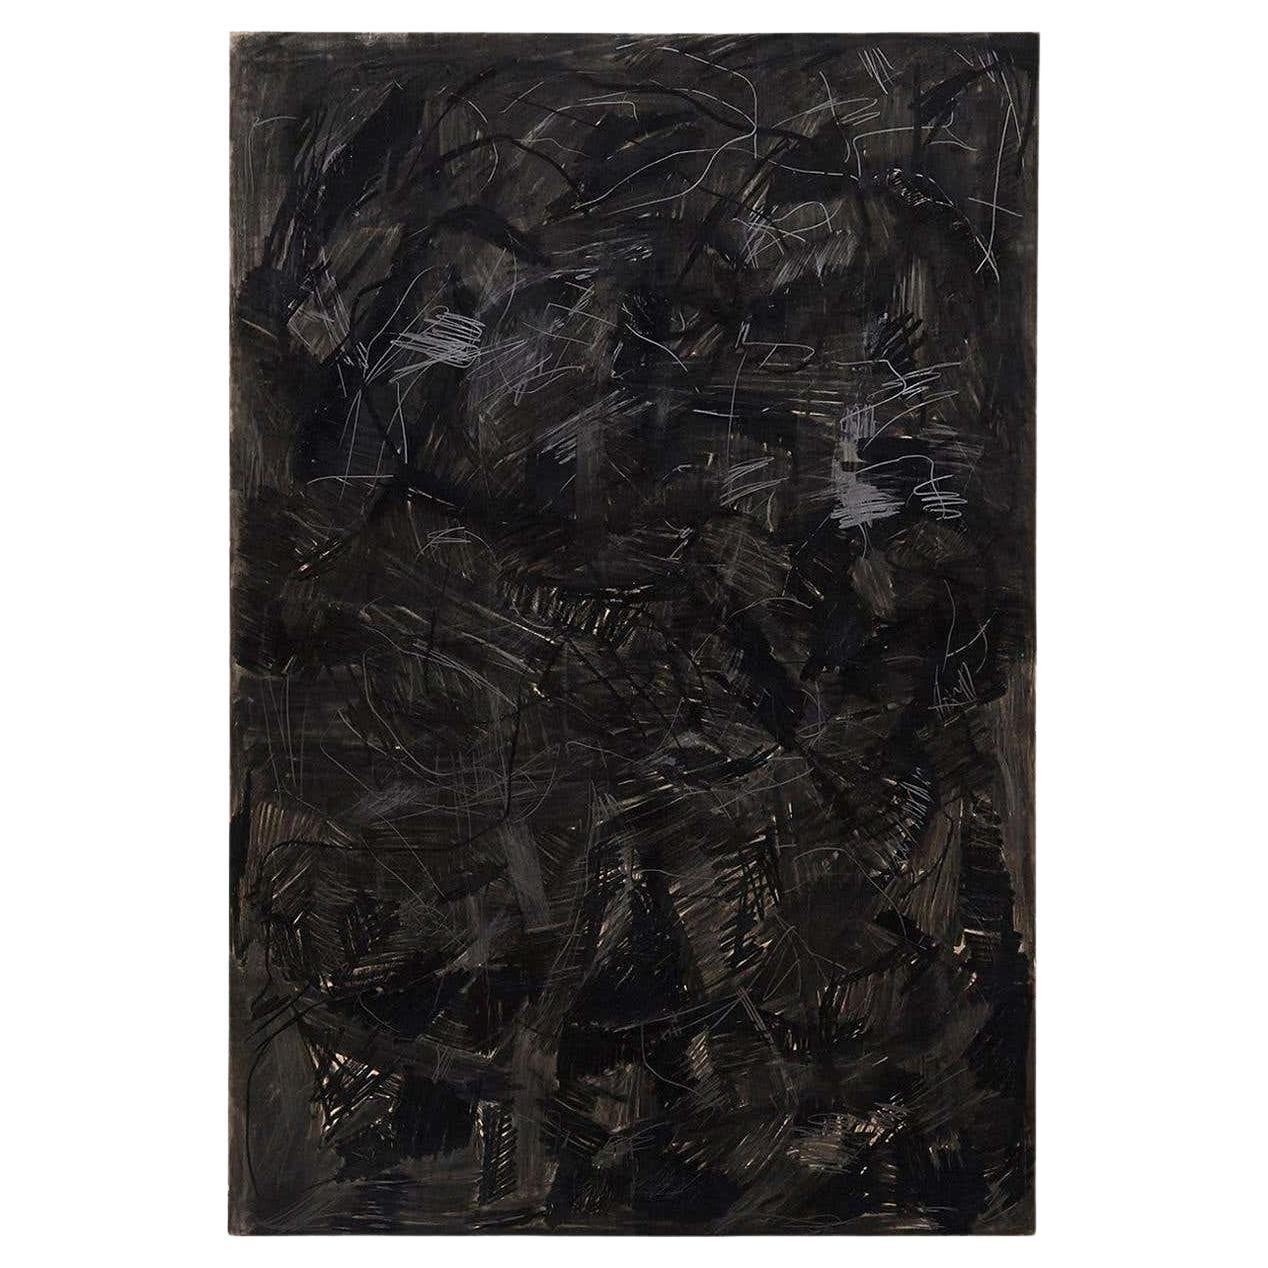 Adrian Zeitgenössisches abstraktes schwarzes Gemälde in Mischtechnik, Groß